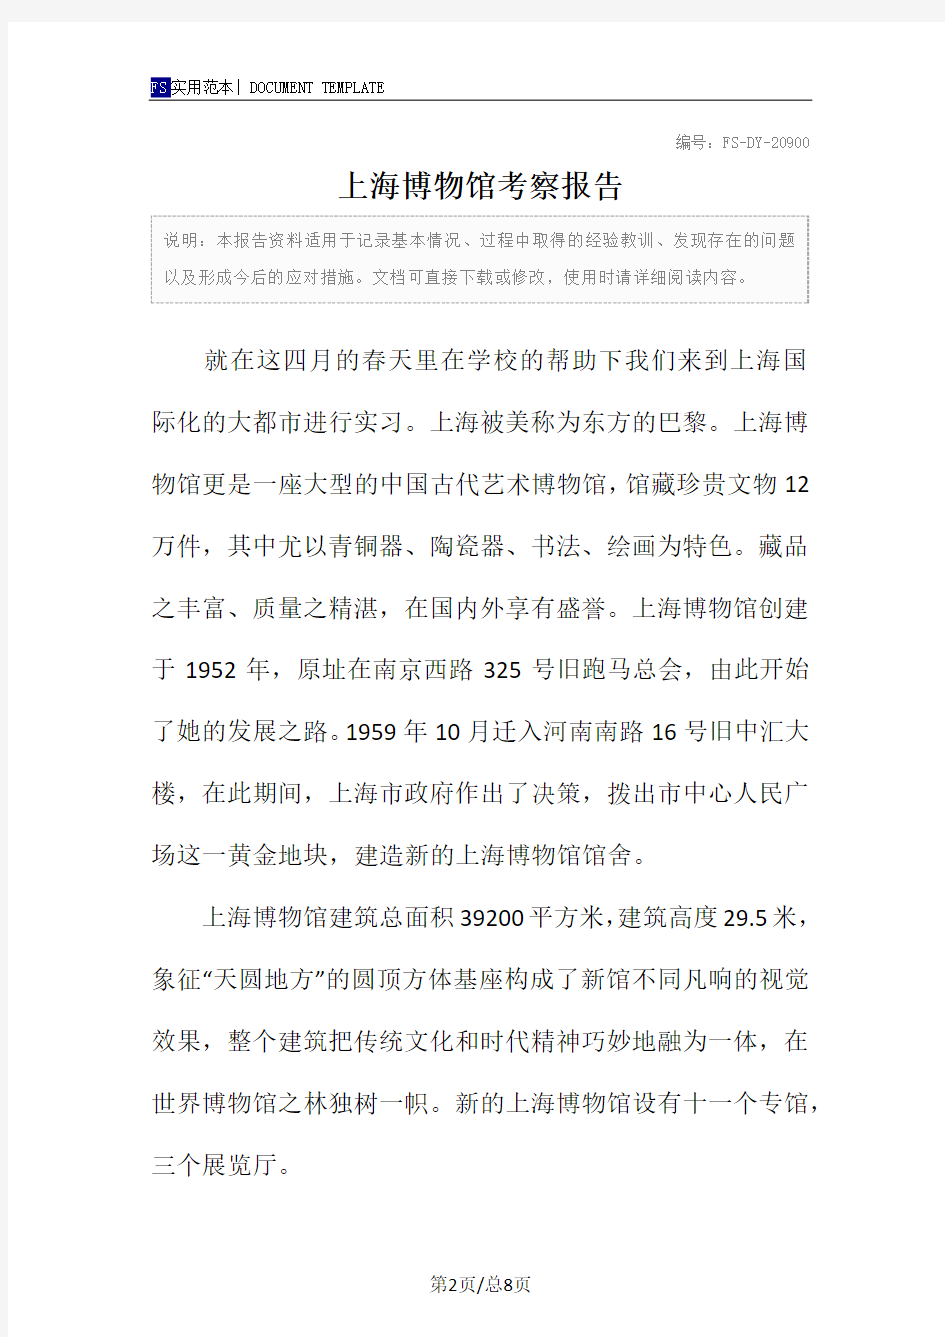 上海博物馆考察报告范本